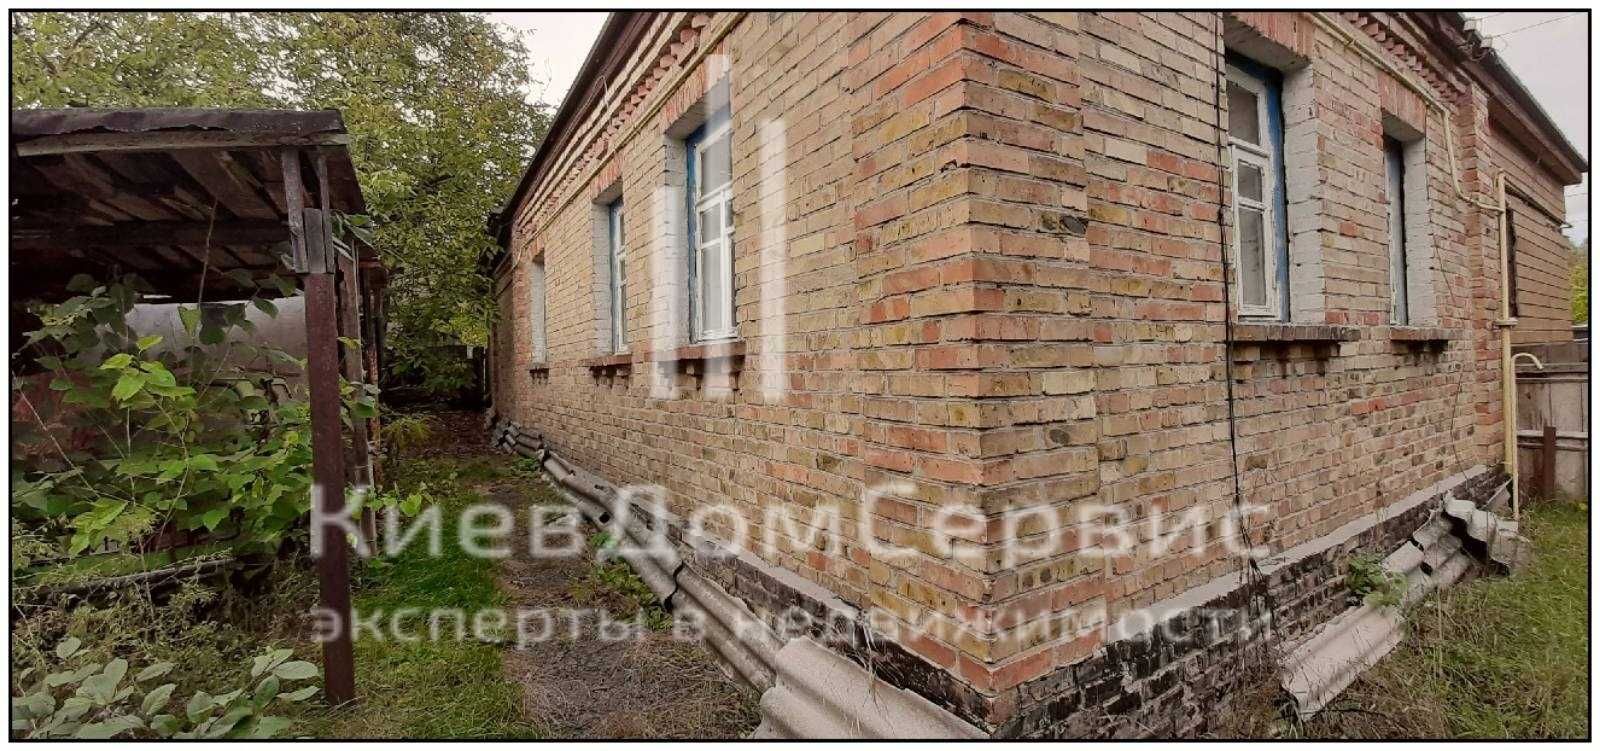 Без % Участок 5.5 соток под жилую стройку Чапаевка Киев Голосеевский